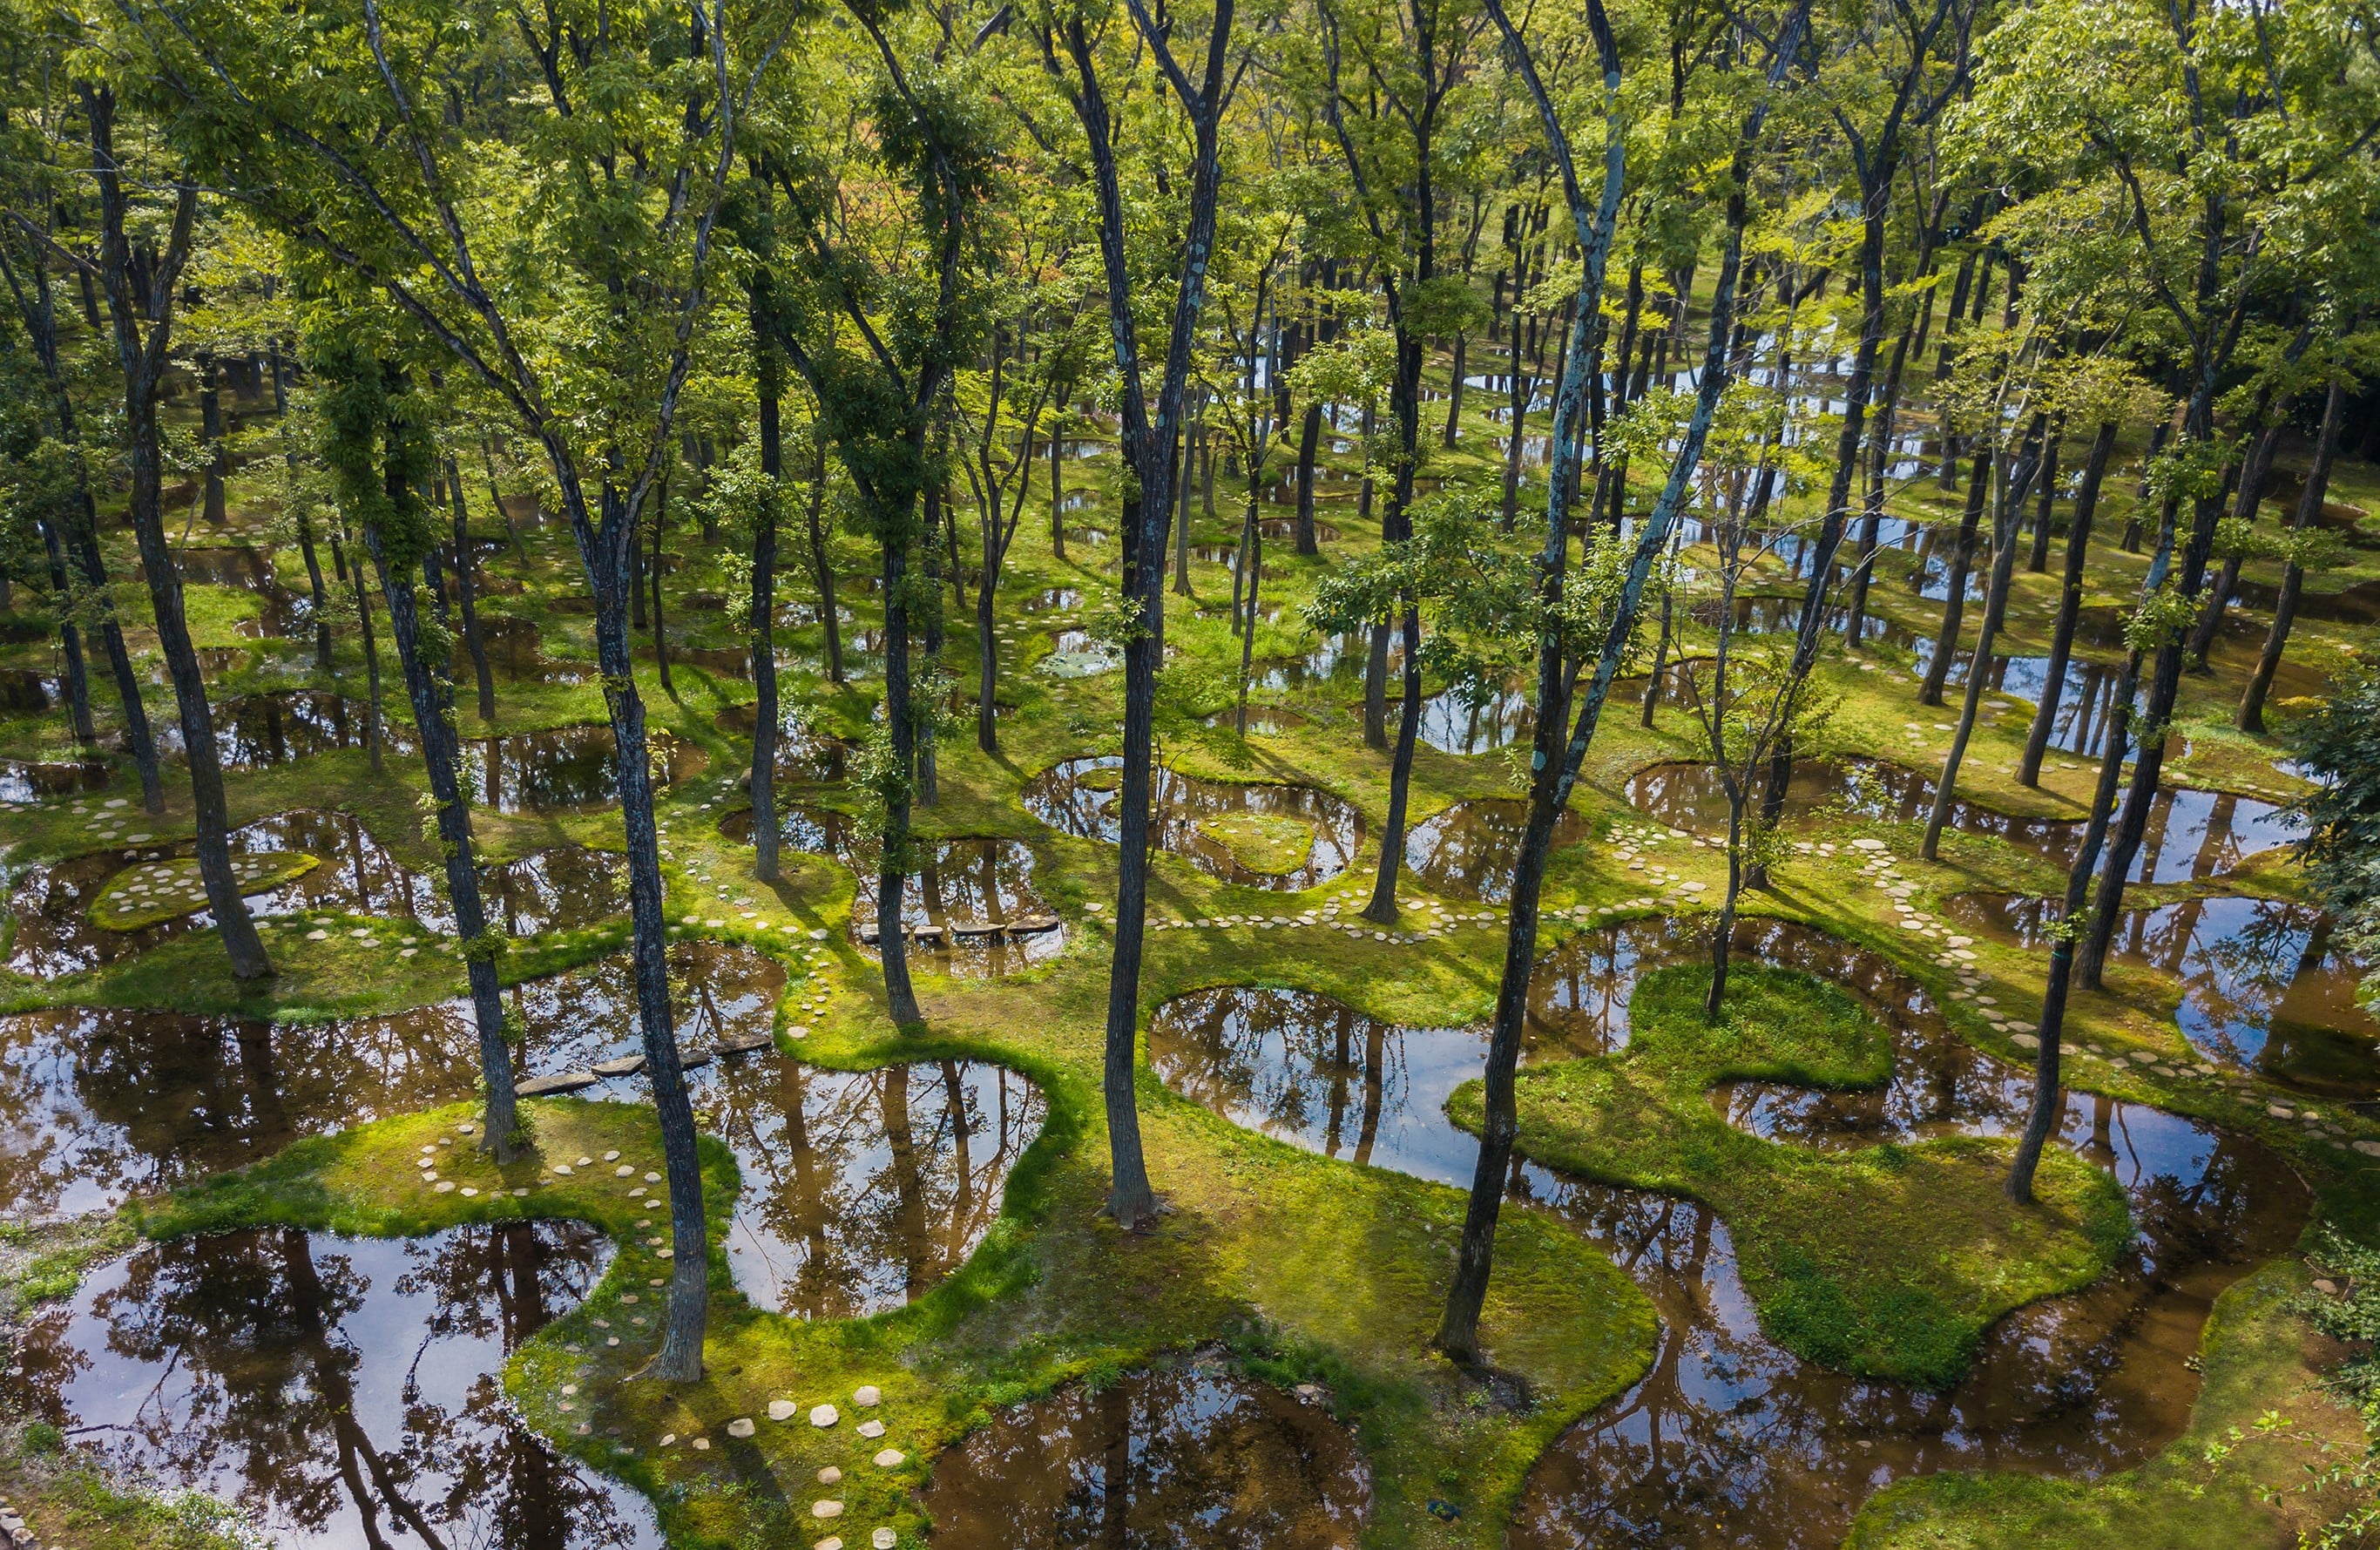 建築家石上純也のデザインによるボタニカルガーデン アートビオトープ「水庭」